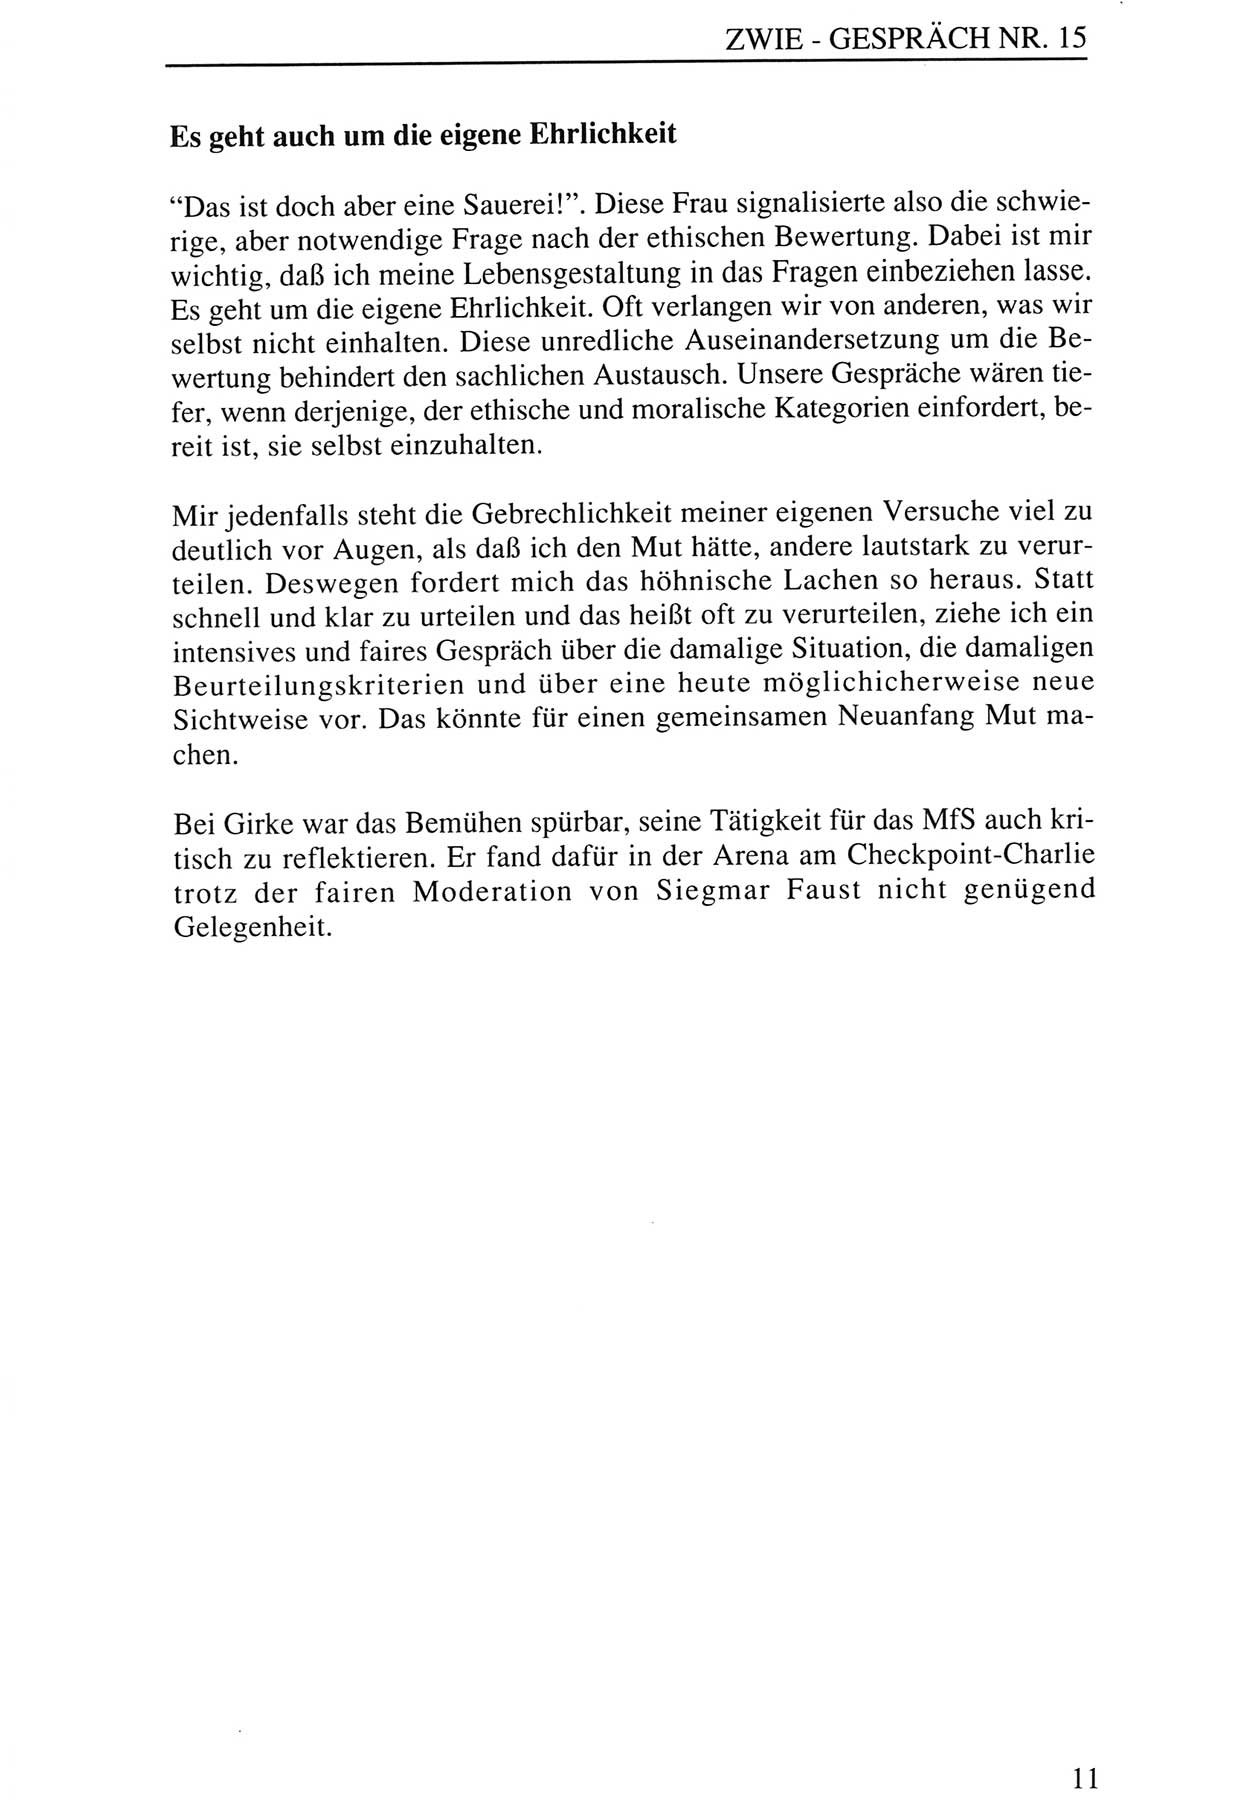 Zwie-Gespräch, Beiträge zur Aufarbeitung der Staatssicherheits-Vergangenheit [Deutsche Demokratische Republik (DDR)], Ausgabe Nr. 15, Berlin 1993, Seite 11 (Zwie-Gespr. Ausg. 15 1993, S. 11)